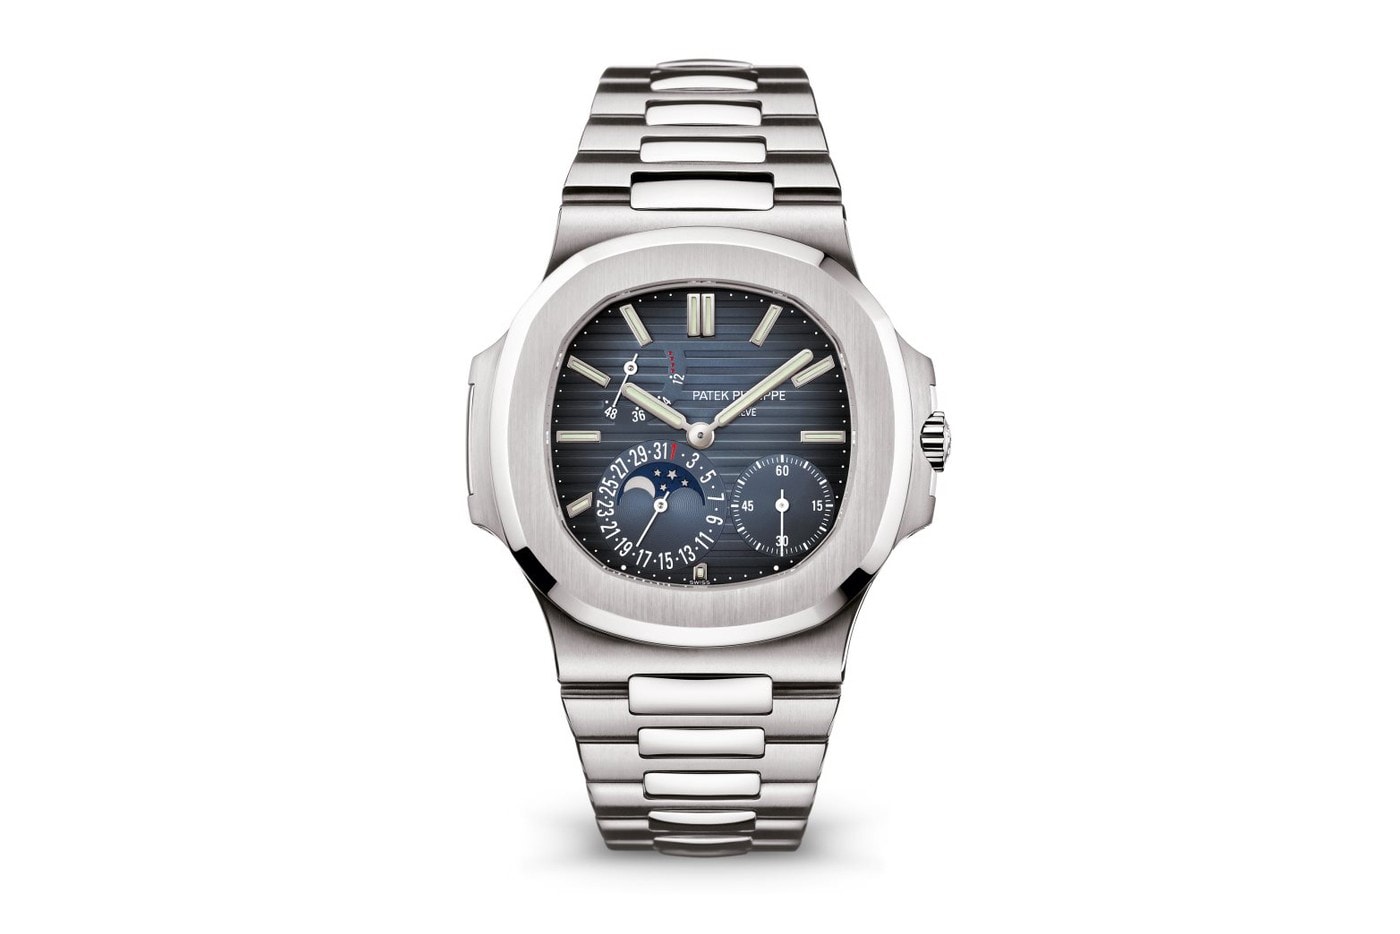 消息稱 Patek Philippe Nautilus 5712A 腕錶亦將迎來停產